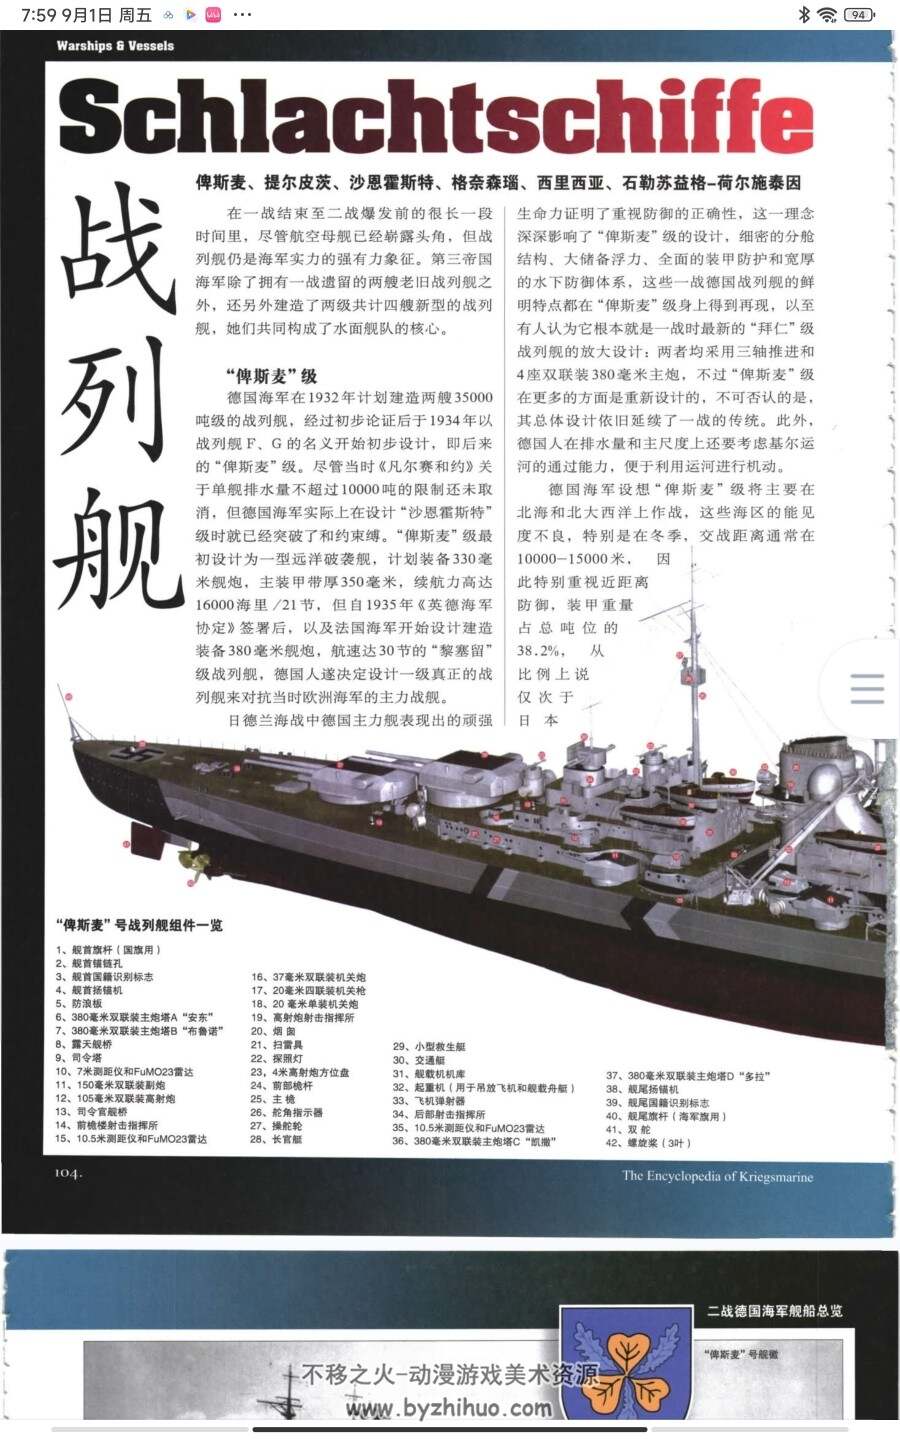 海军综合事典 普通版和高清版 PDF 百度网盘下载